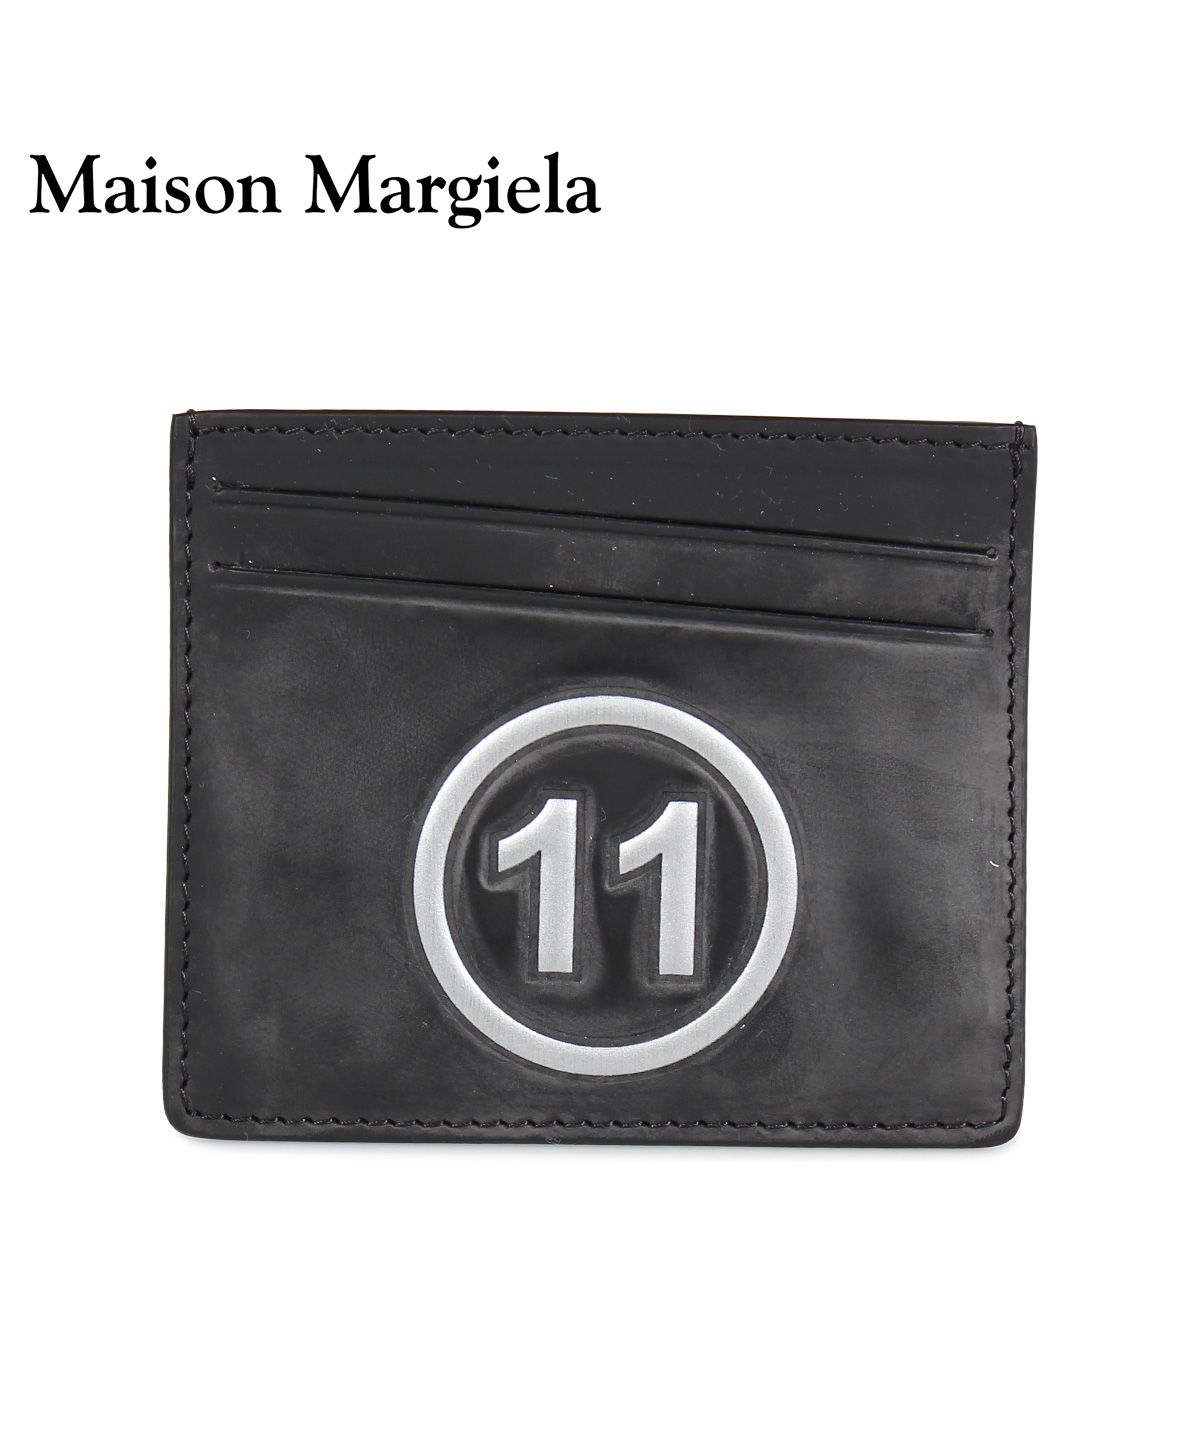 メゾンマルジェラ MAISON MARGIELA カードケース 名刺入れ 定期入れ 税込 メンズ レディース CARD SHOP 特売 スニークオンラインショップ S35UI04 レザー ONLINE 黒 ブラック CASE SNEAK